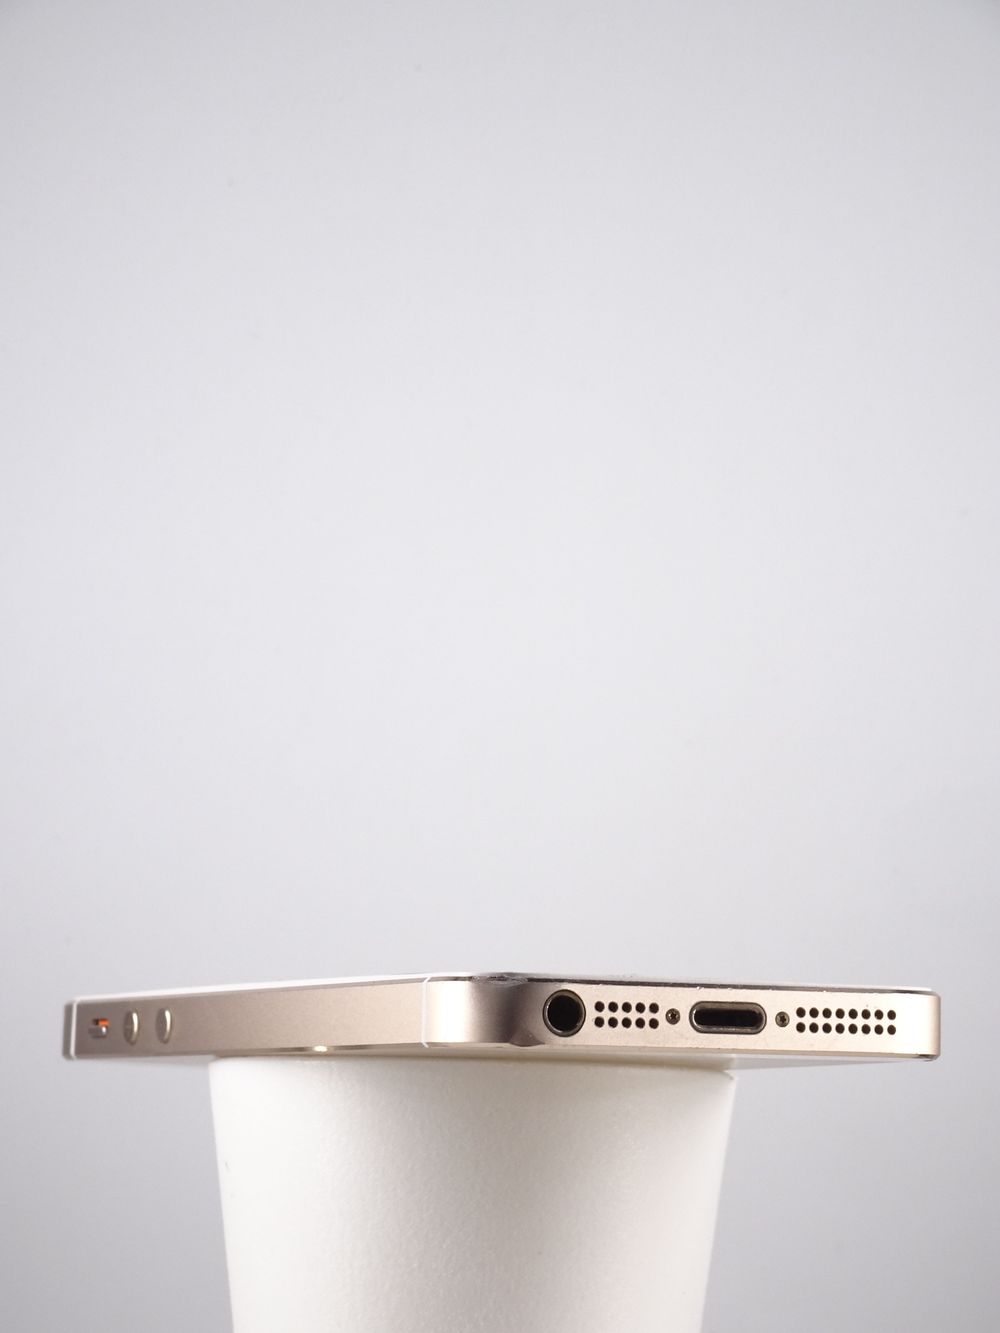 Мобилен телефон Apple, iPhone 5s, 64 GB, Gold,  Отлично